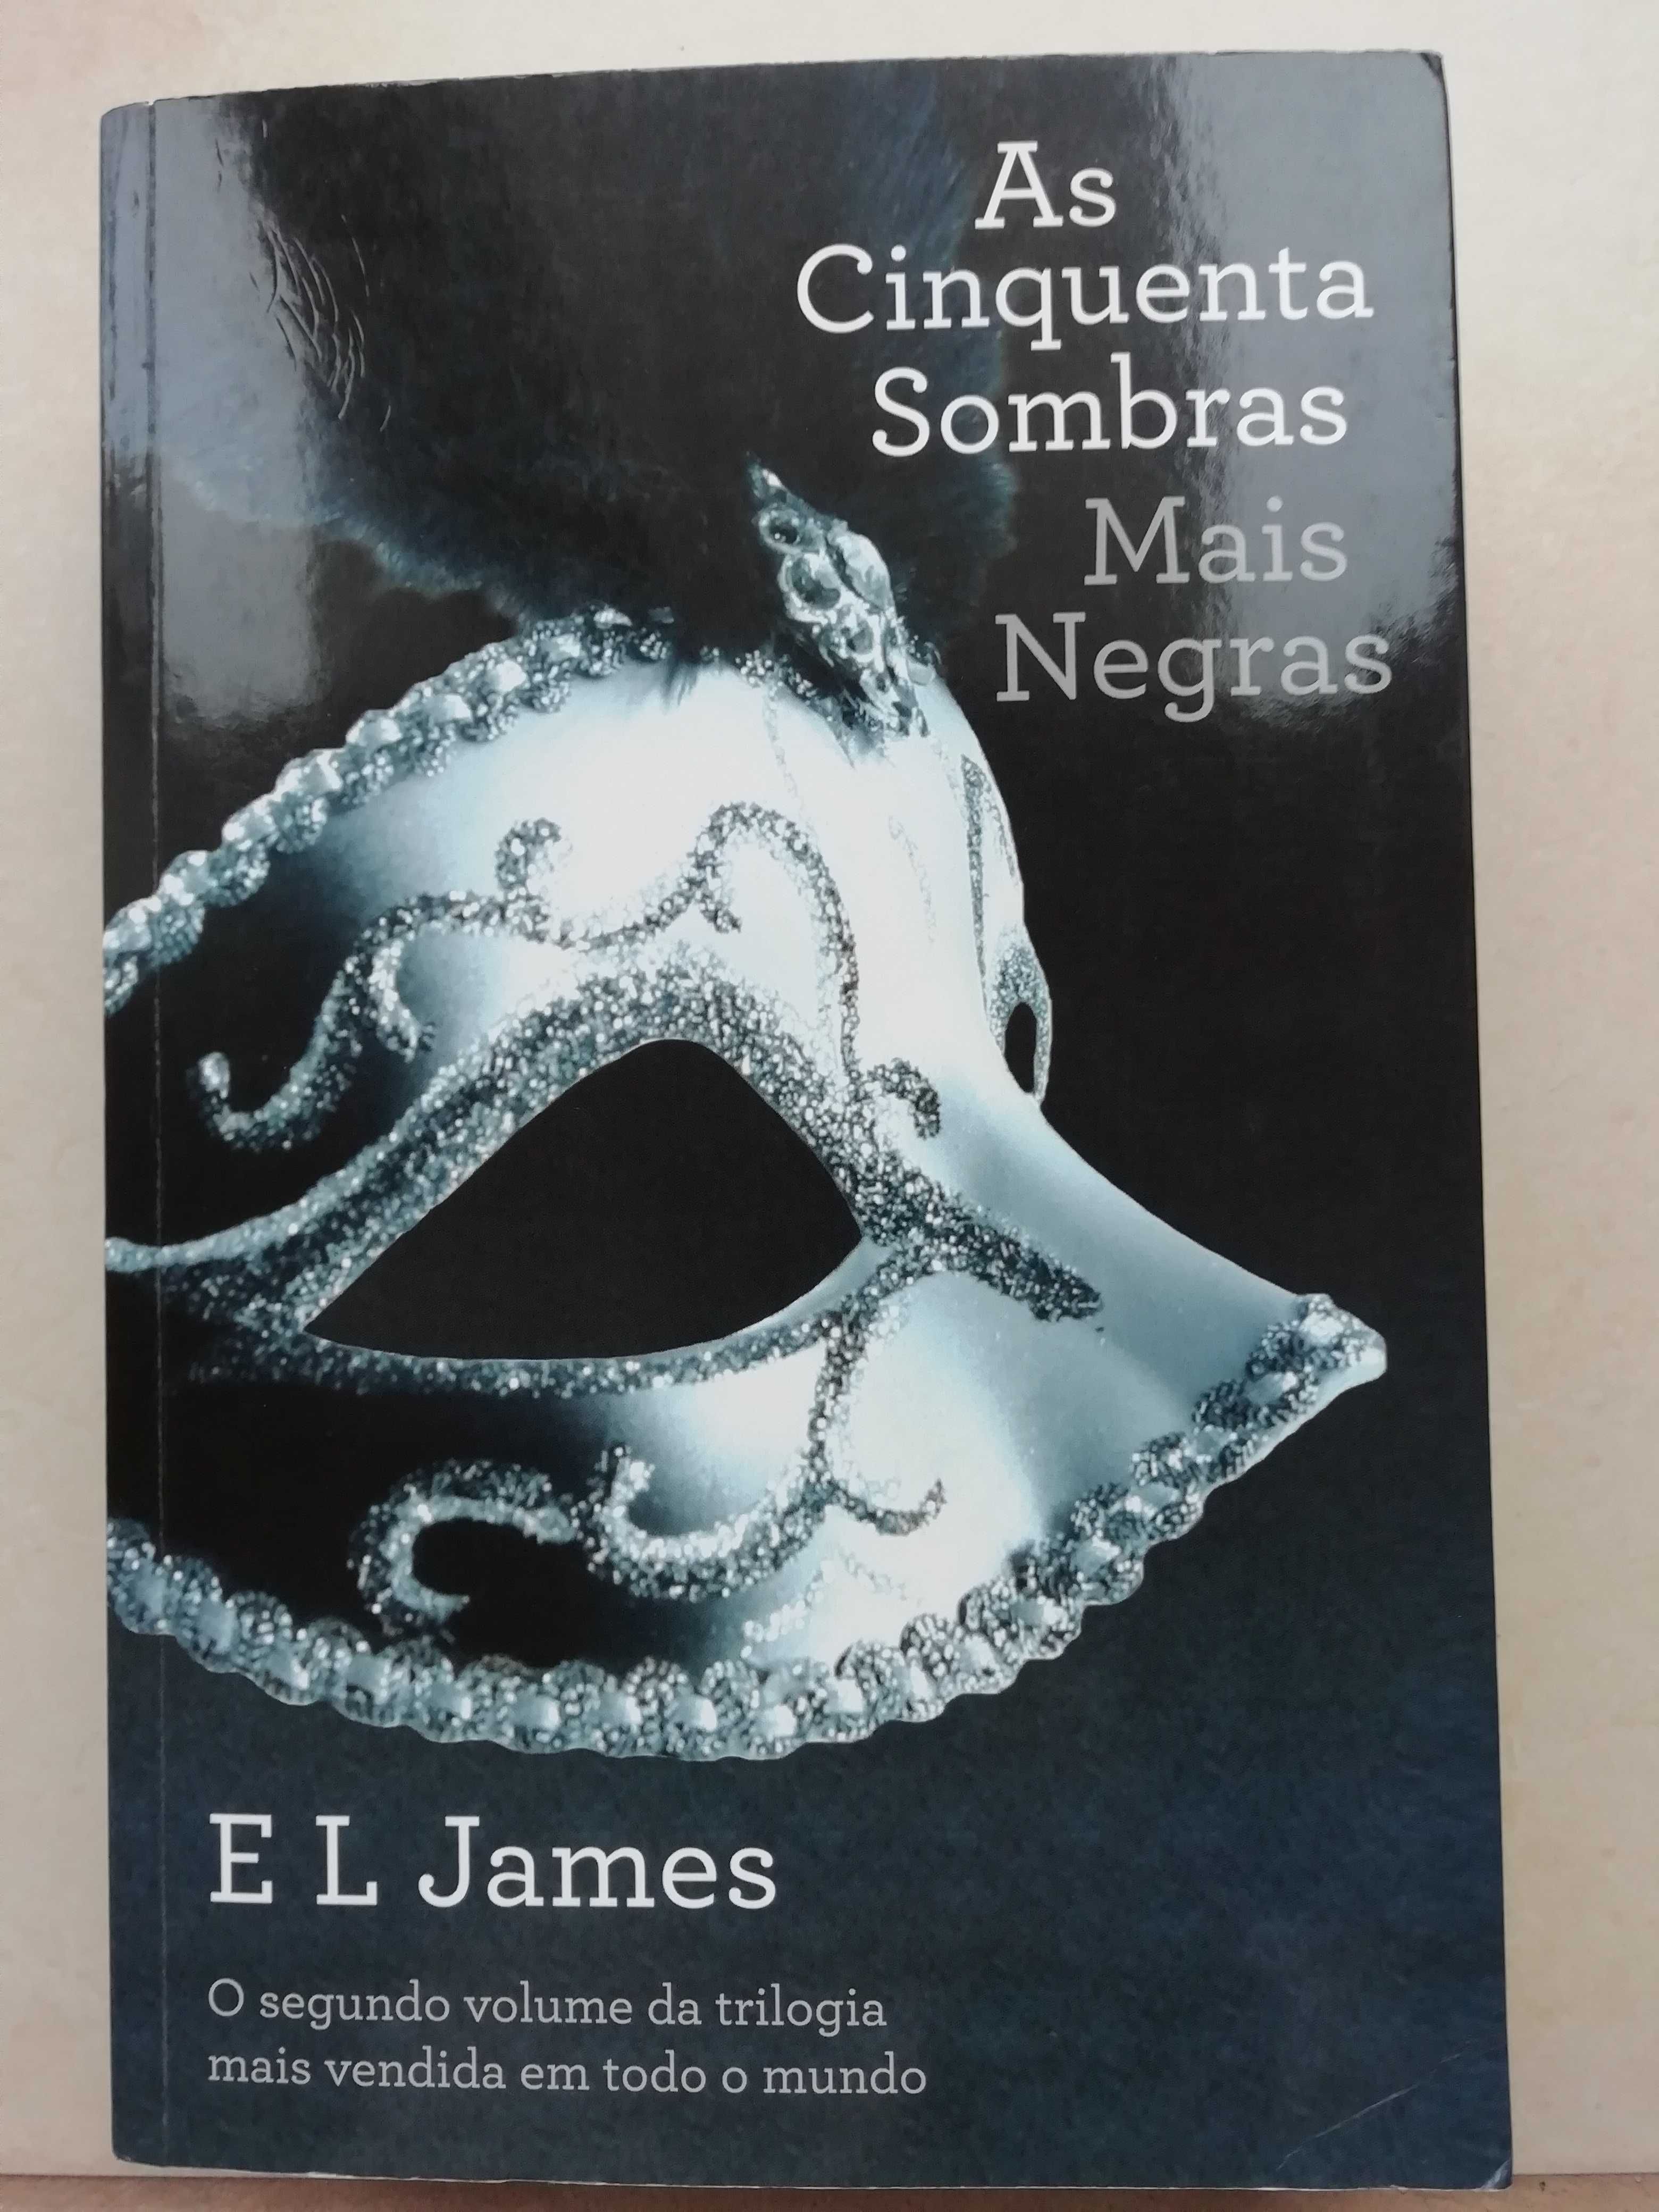 Livro "AS Cinquenta Sombras Mais Negras"